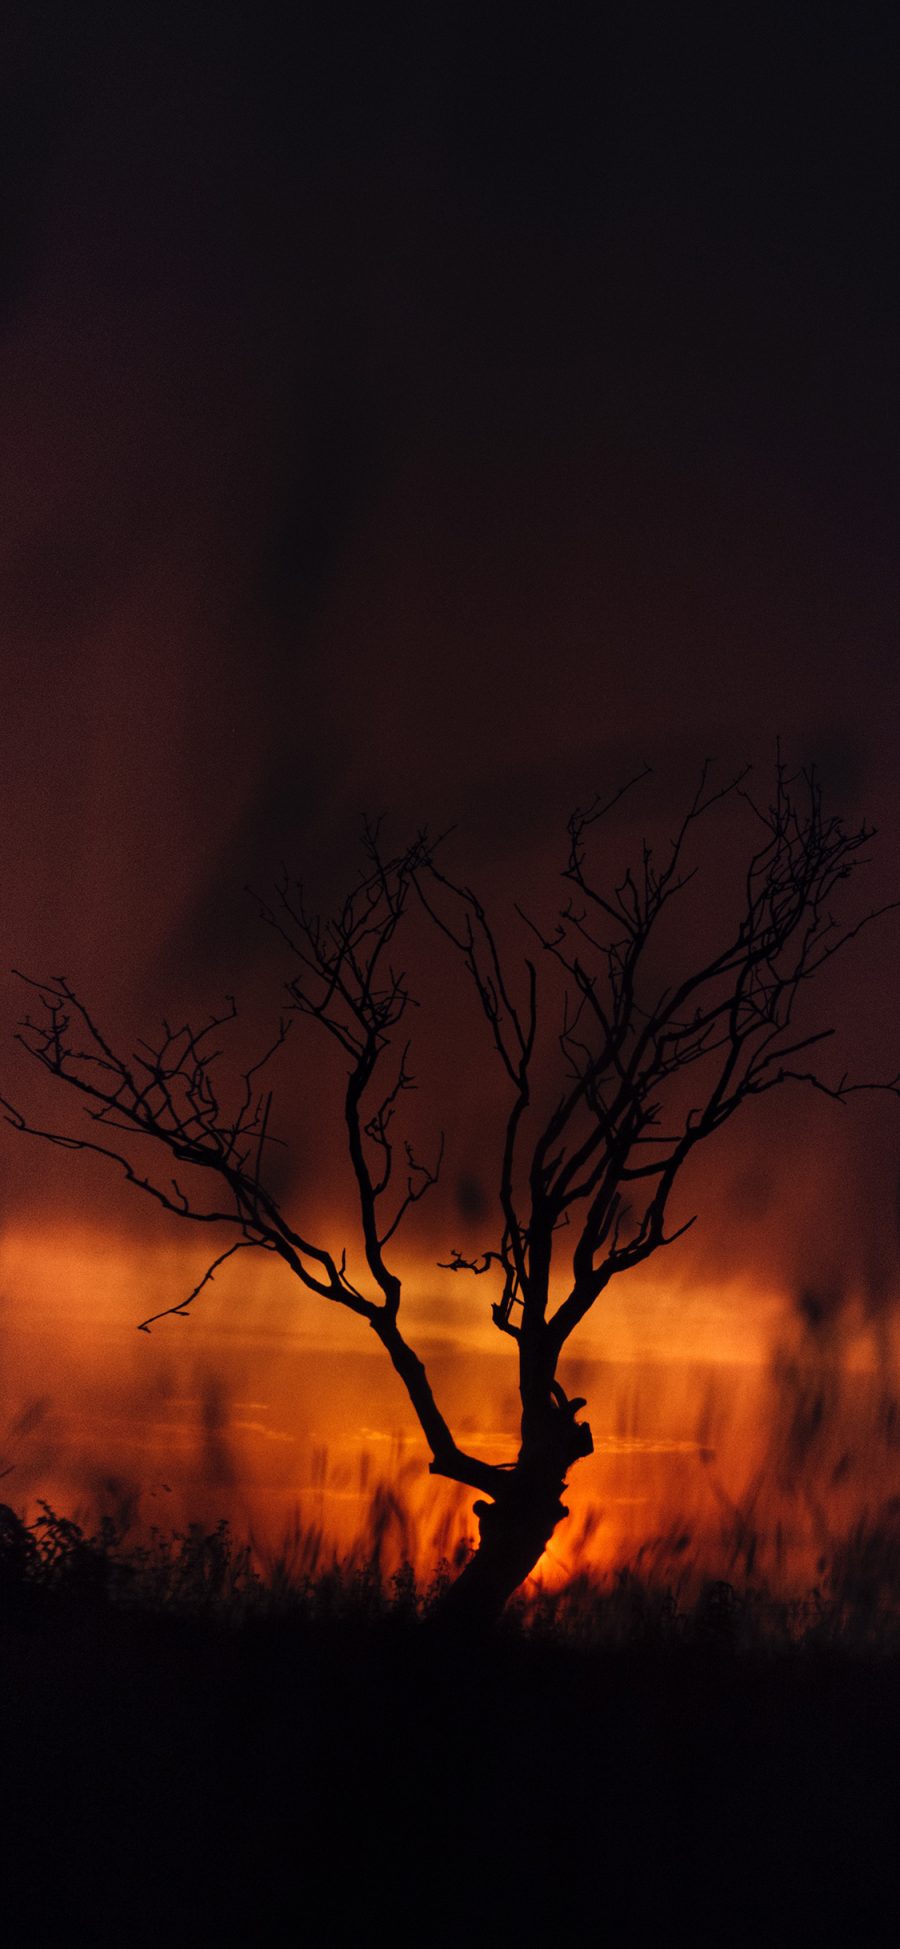 [2436×1125]树木 枯枝 夕阳 晚霞 苹果手机壁纸图片